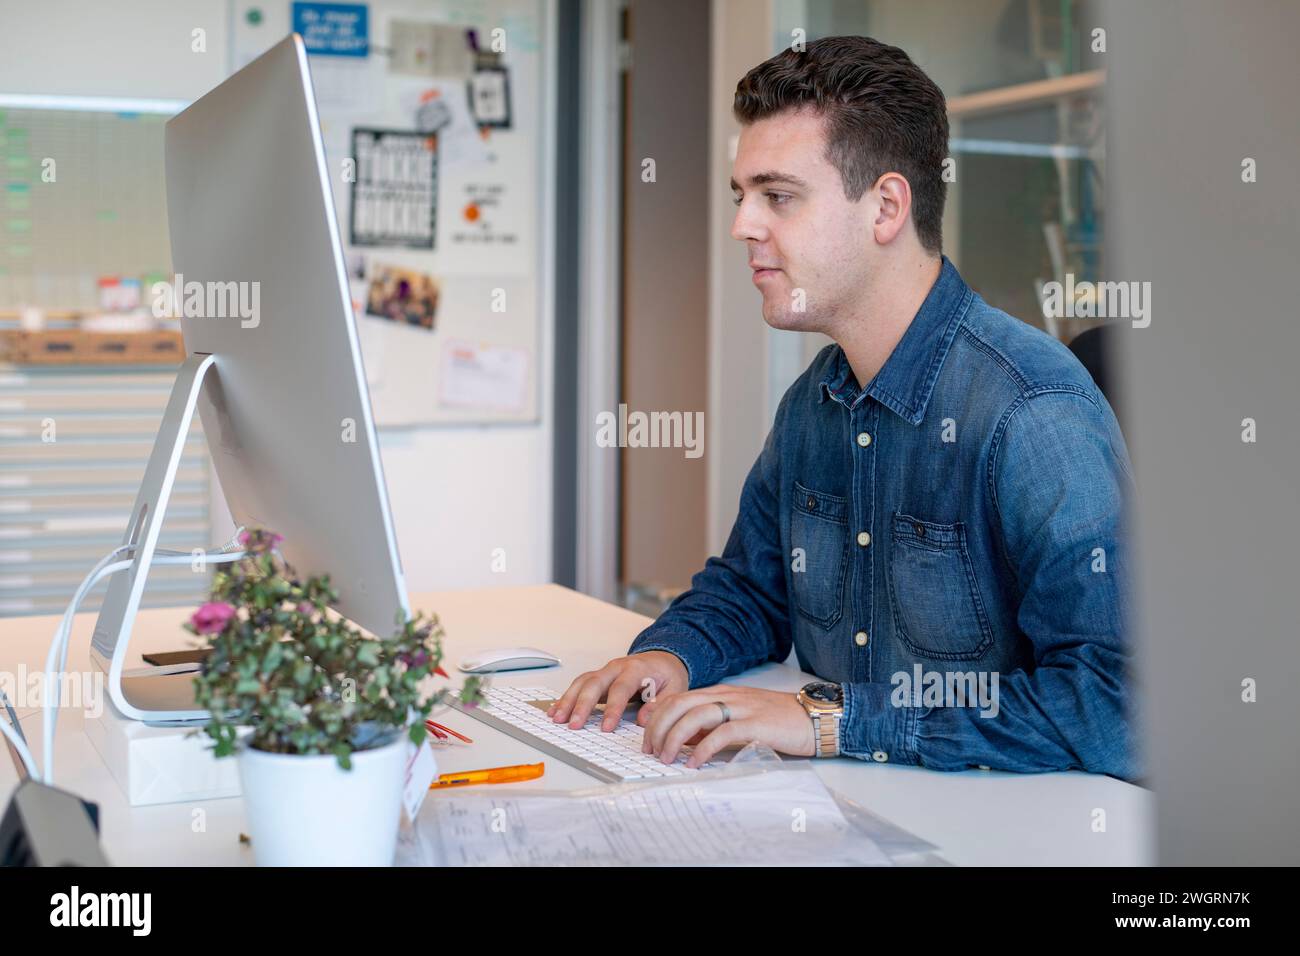 Männlicher junger weißer Profi, der in einem Architektenbüro an einem Neubauprojekt arbeitet Stockfoto